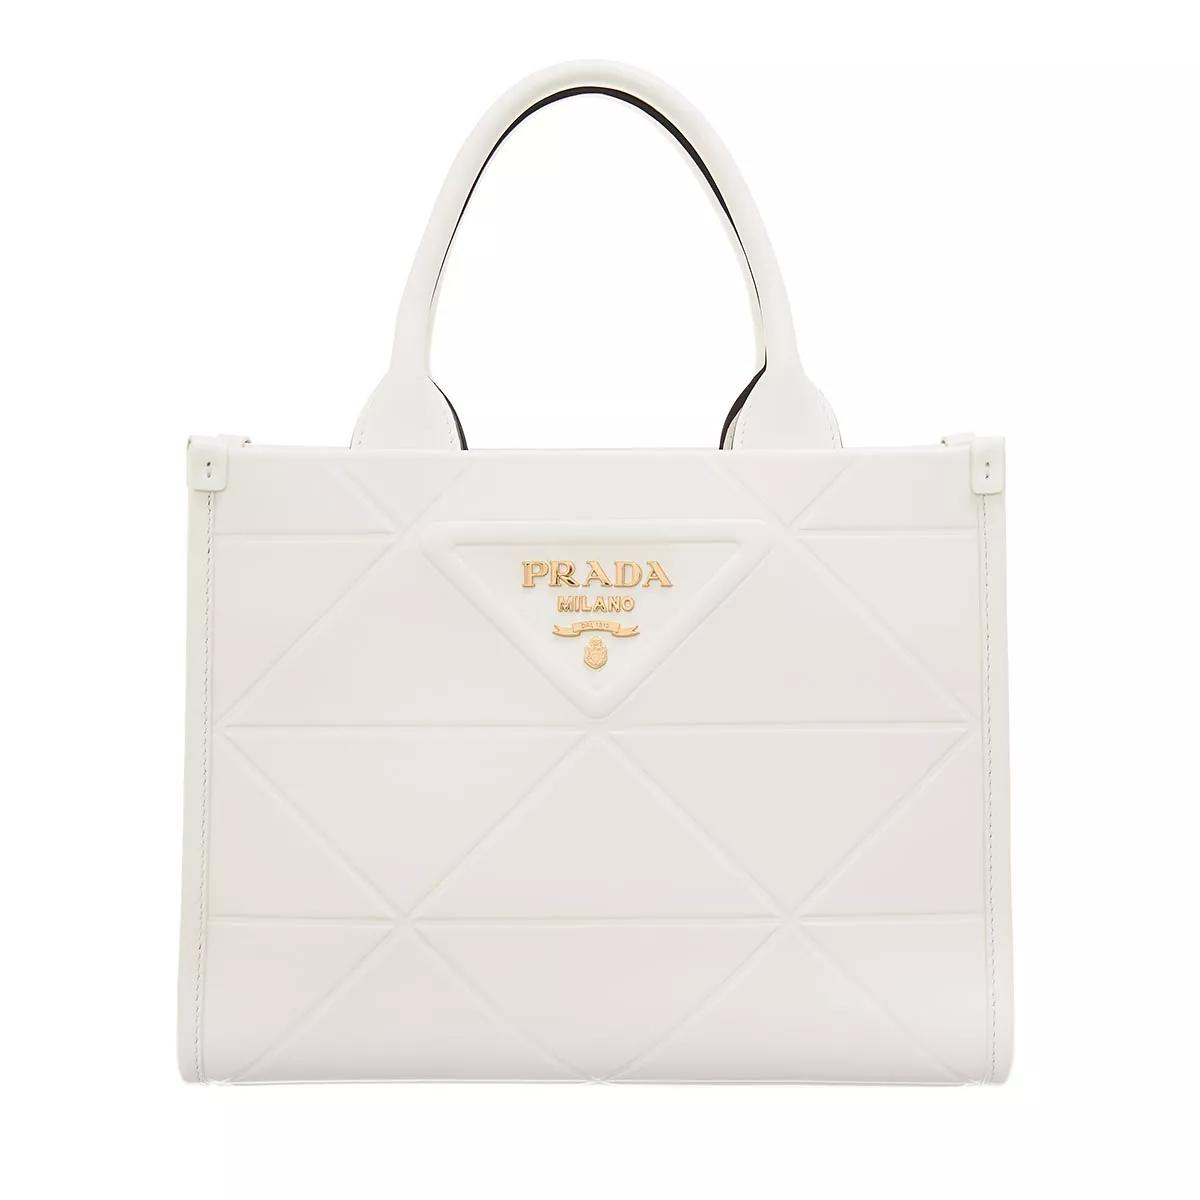 Prada Small Shoulder Bag White | Crossbody Bag